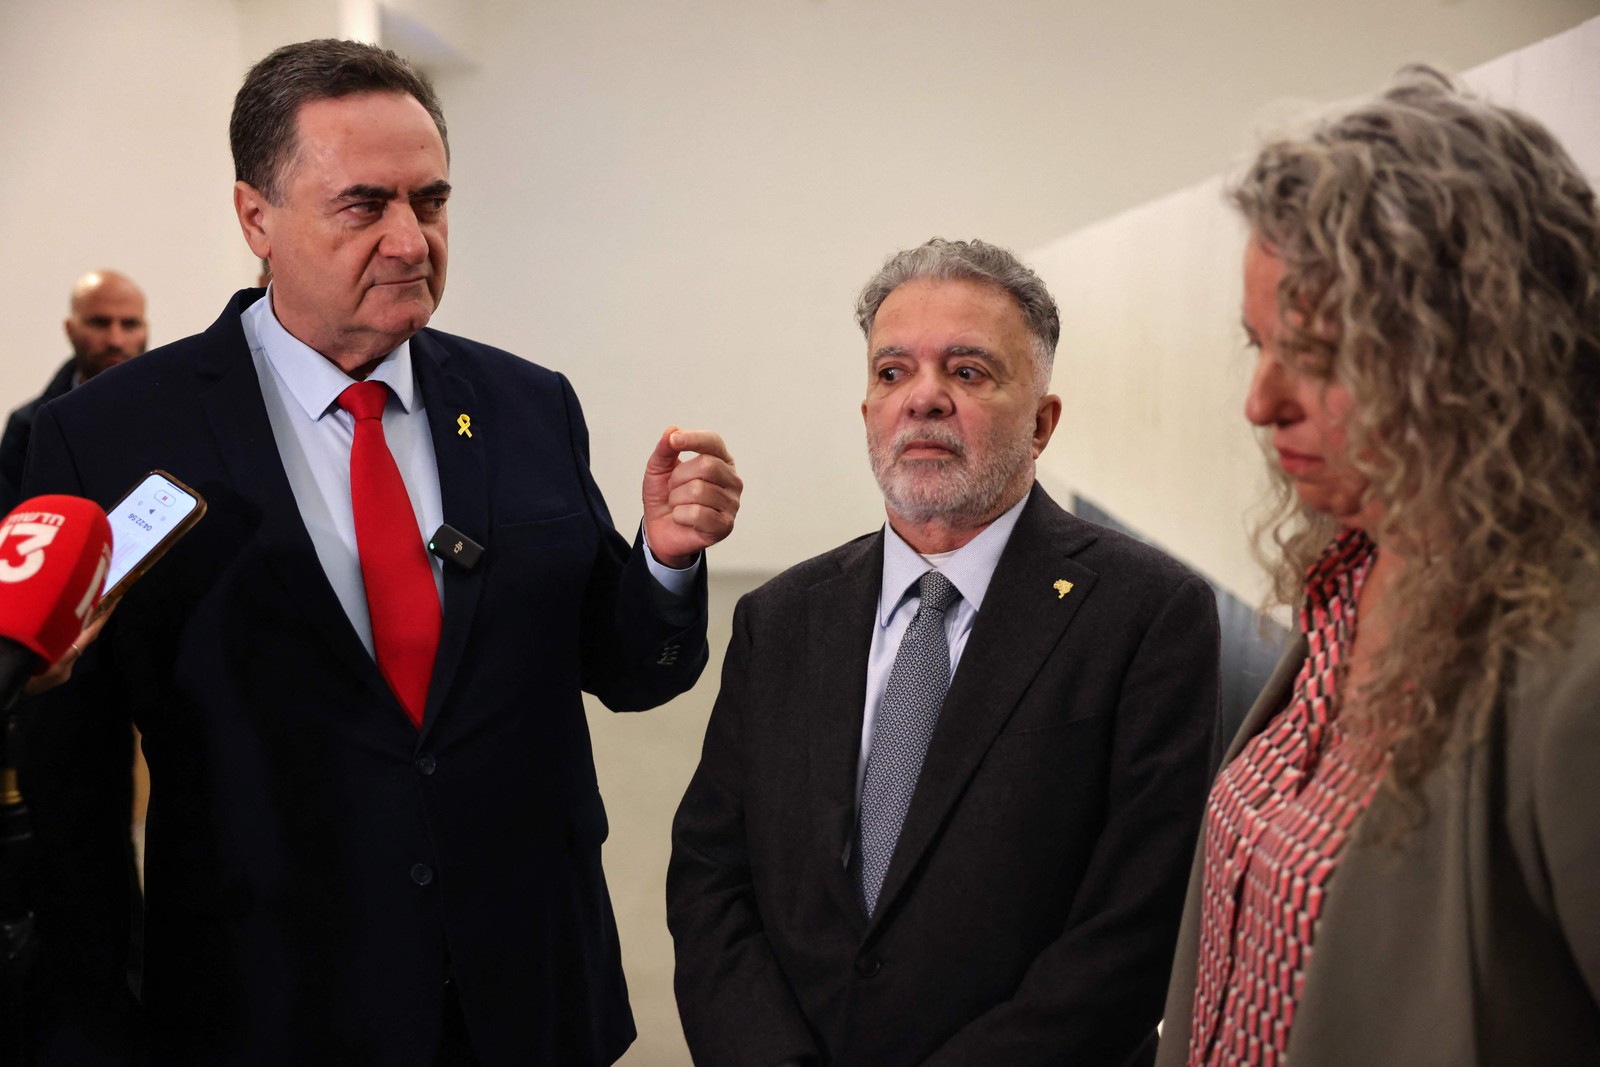 O ministro israelense declarou que a fala do presidente brasileiro “é um ataque antissemita grave” — Foto: AHMAD GHARABLI